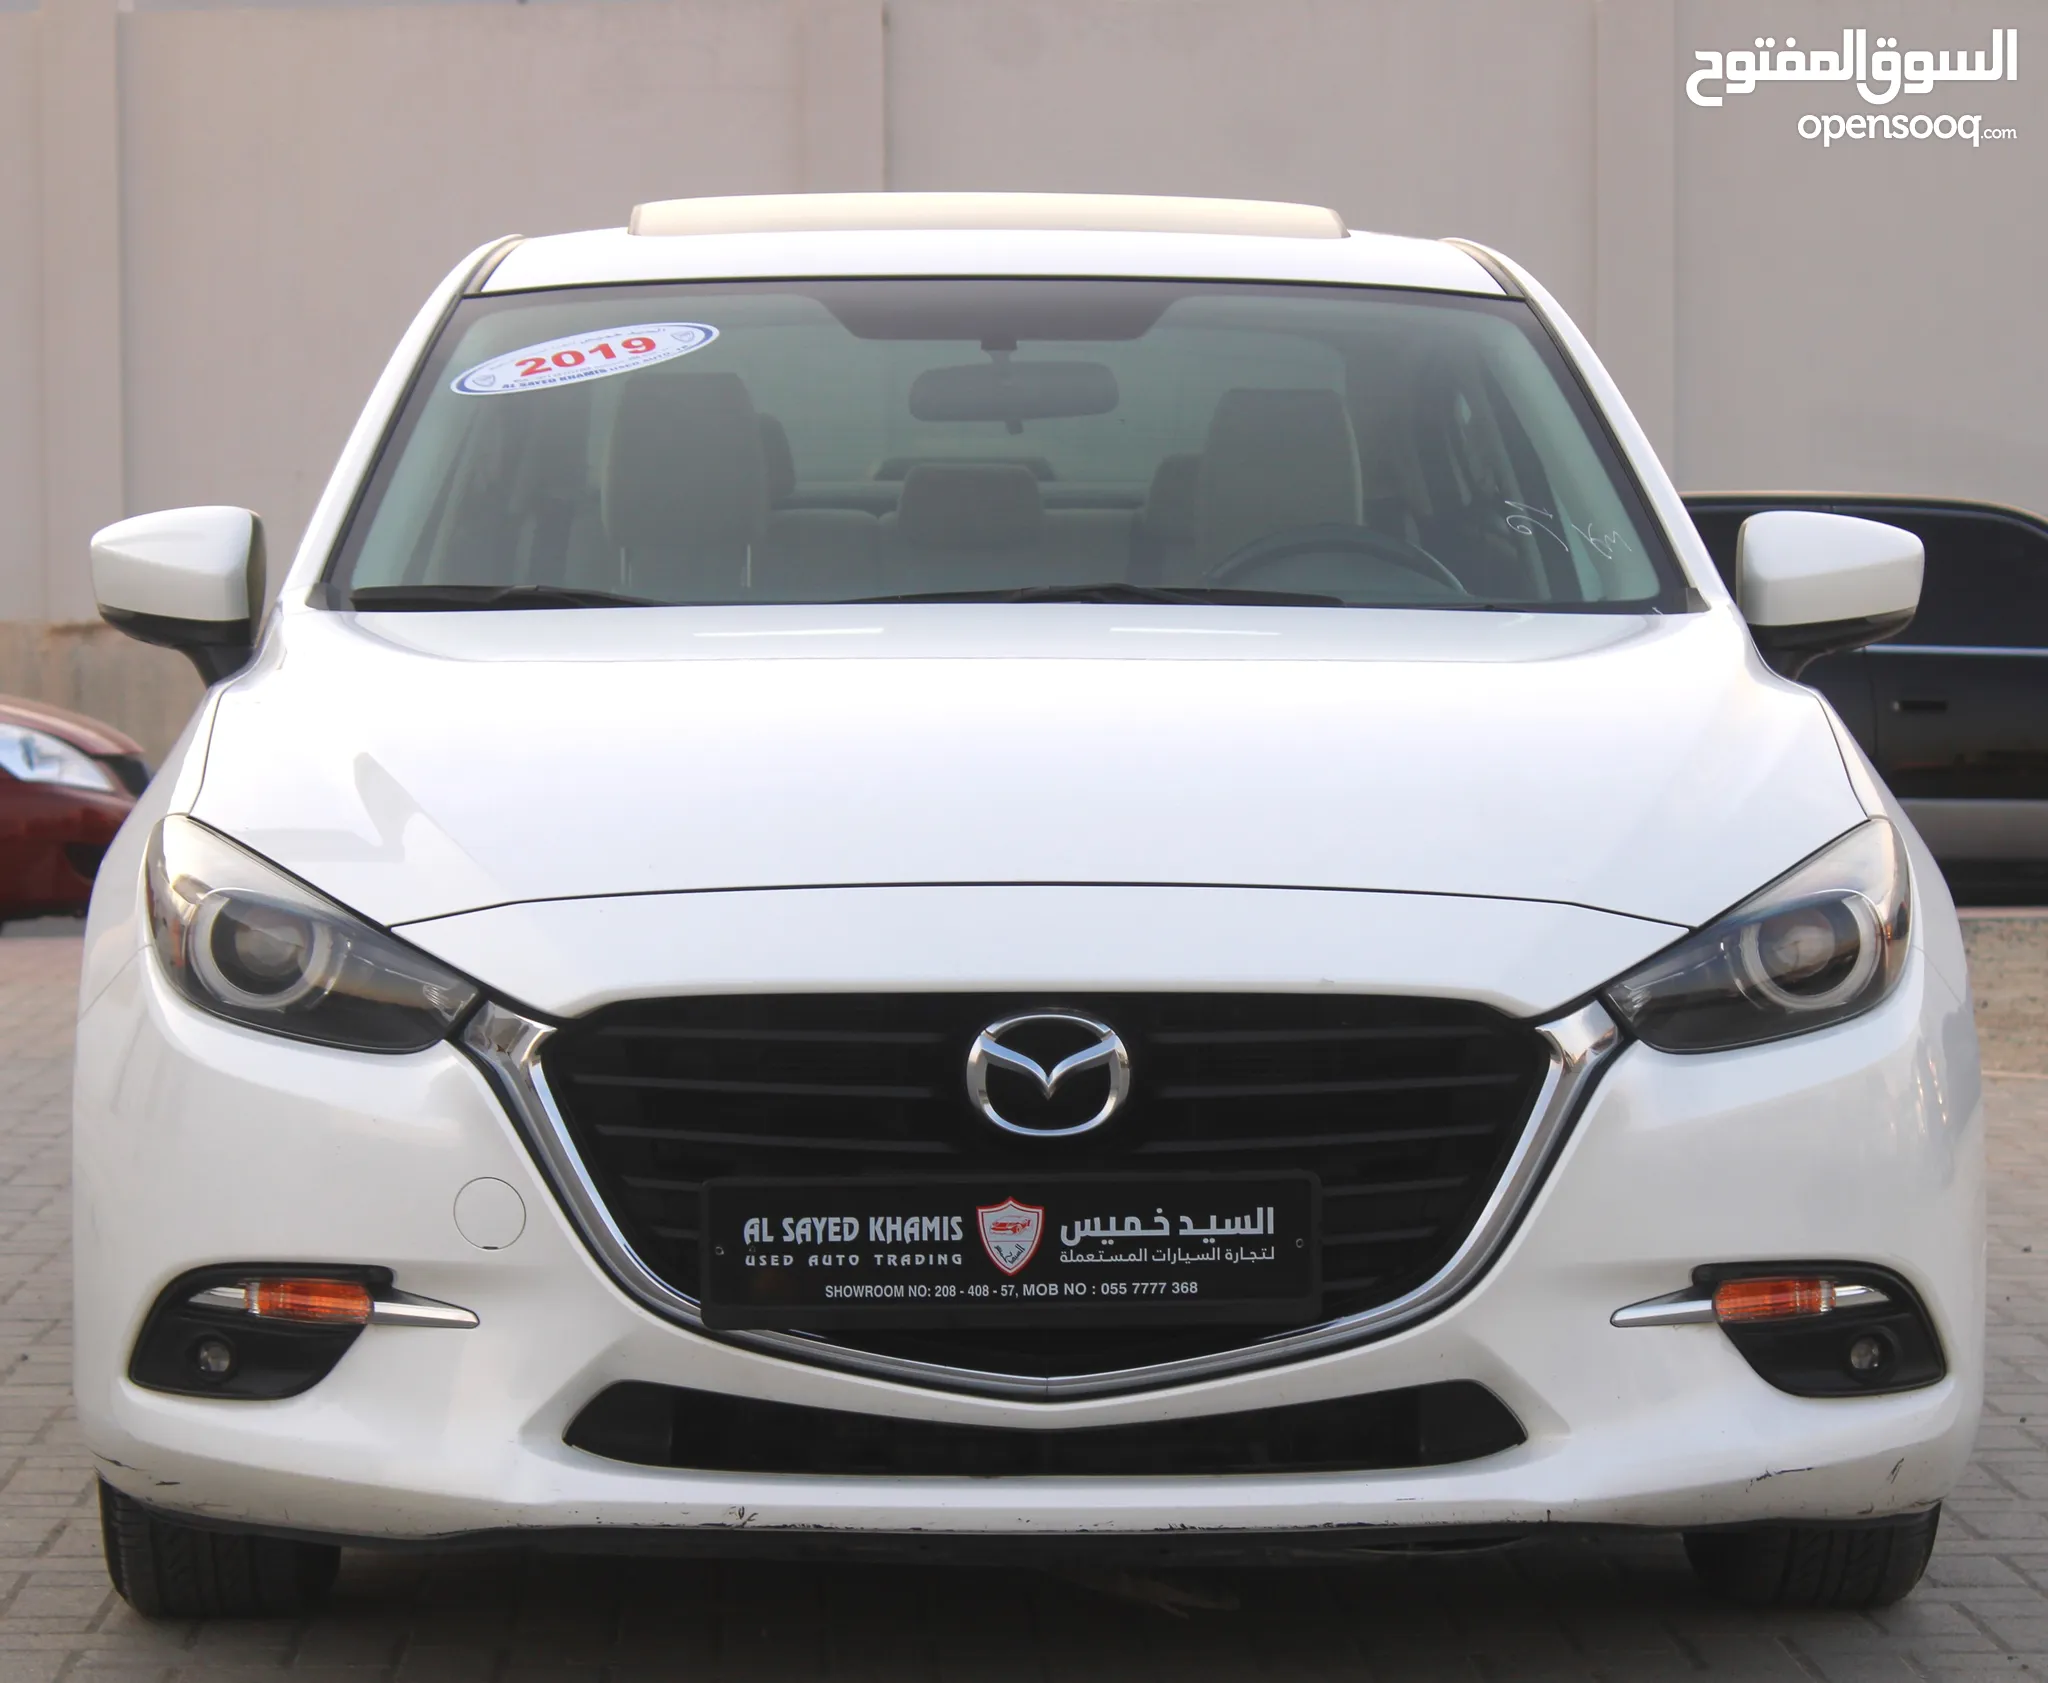 سيارات مازدا للبيع : ارخص الاسعار في الإمارات : جميع موديلات سيارة مازدا :  مستعملة وجديدة | السوق المفتوح